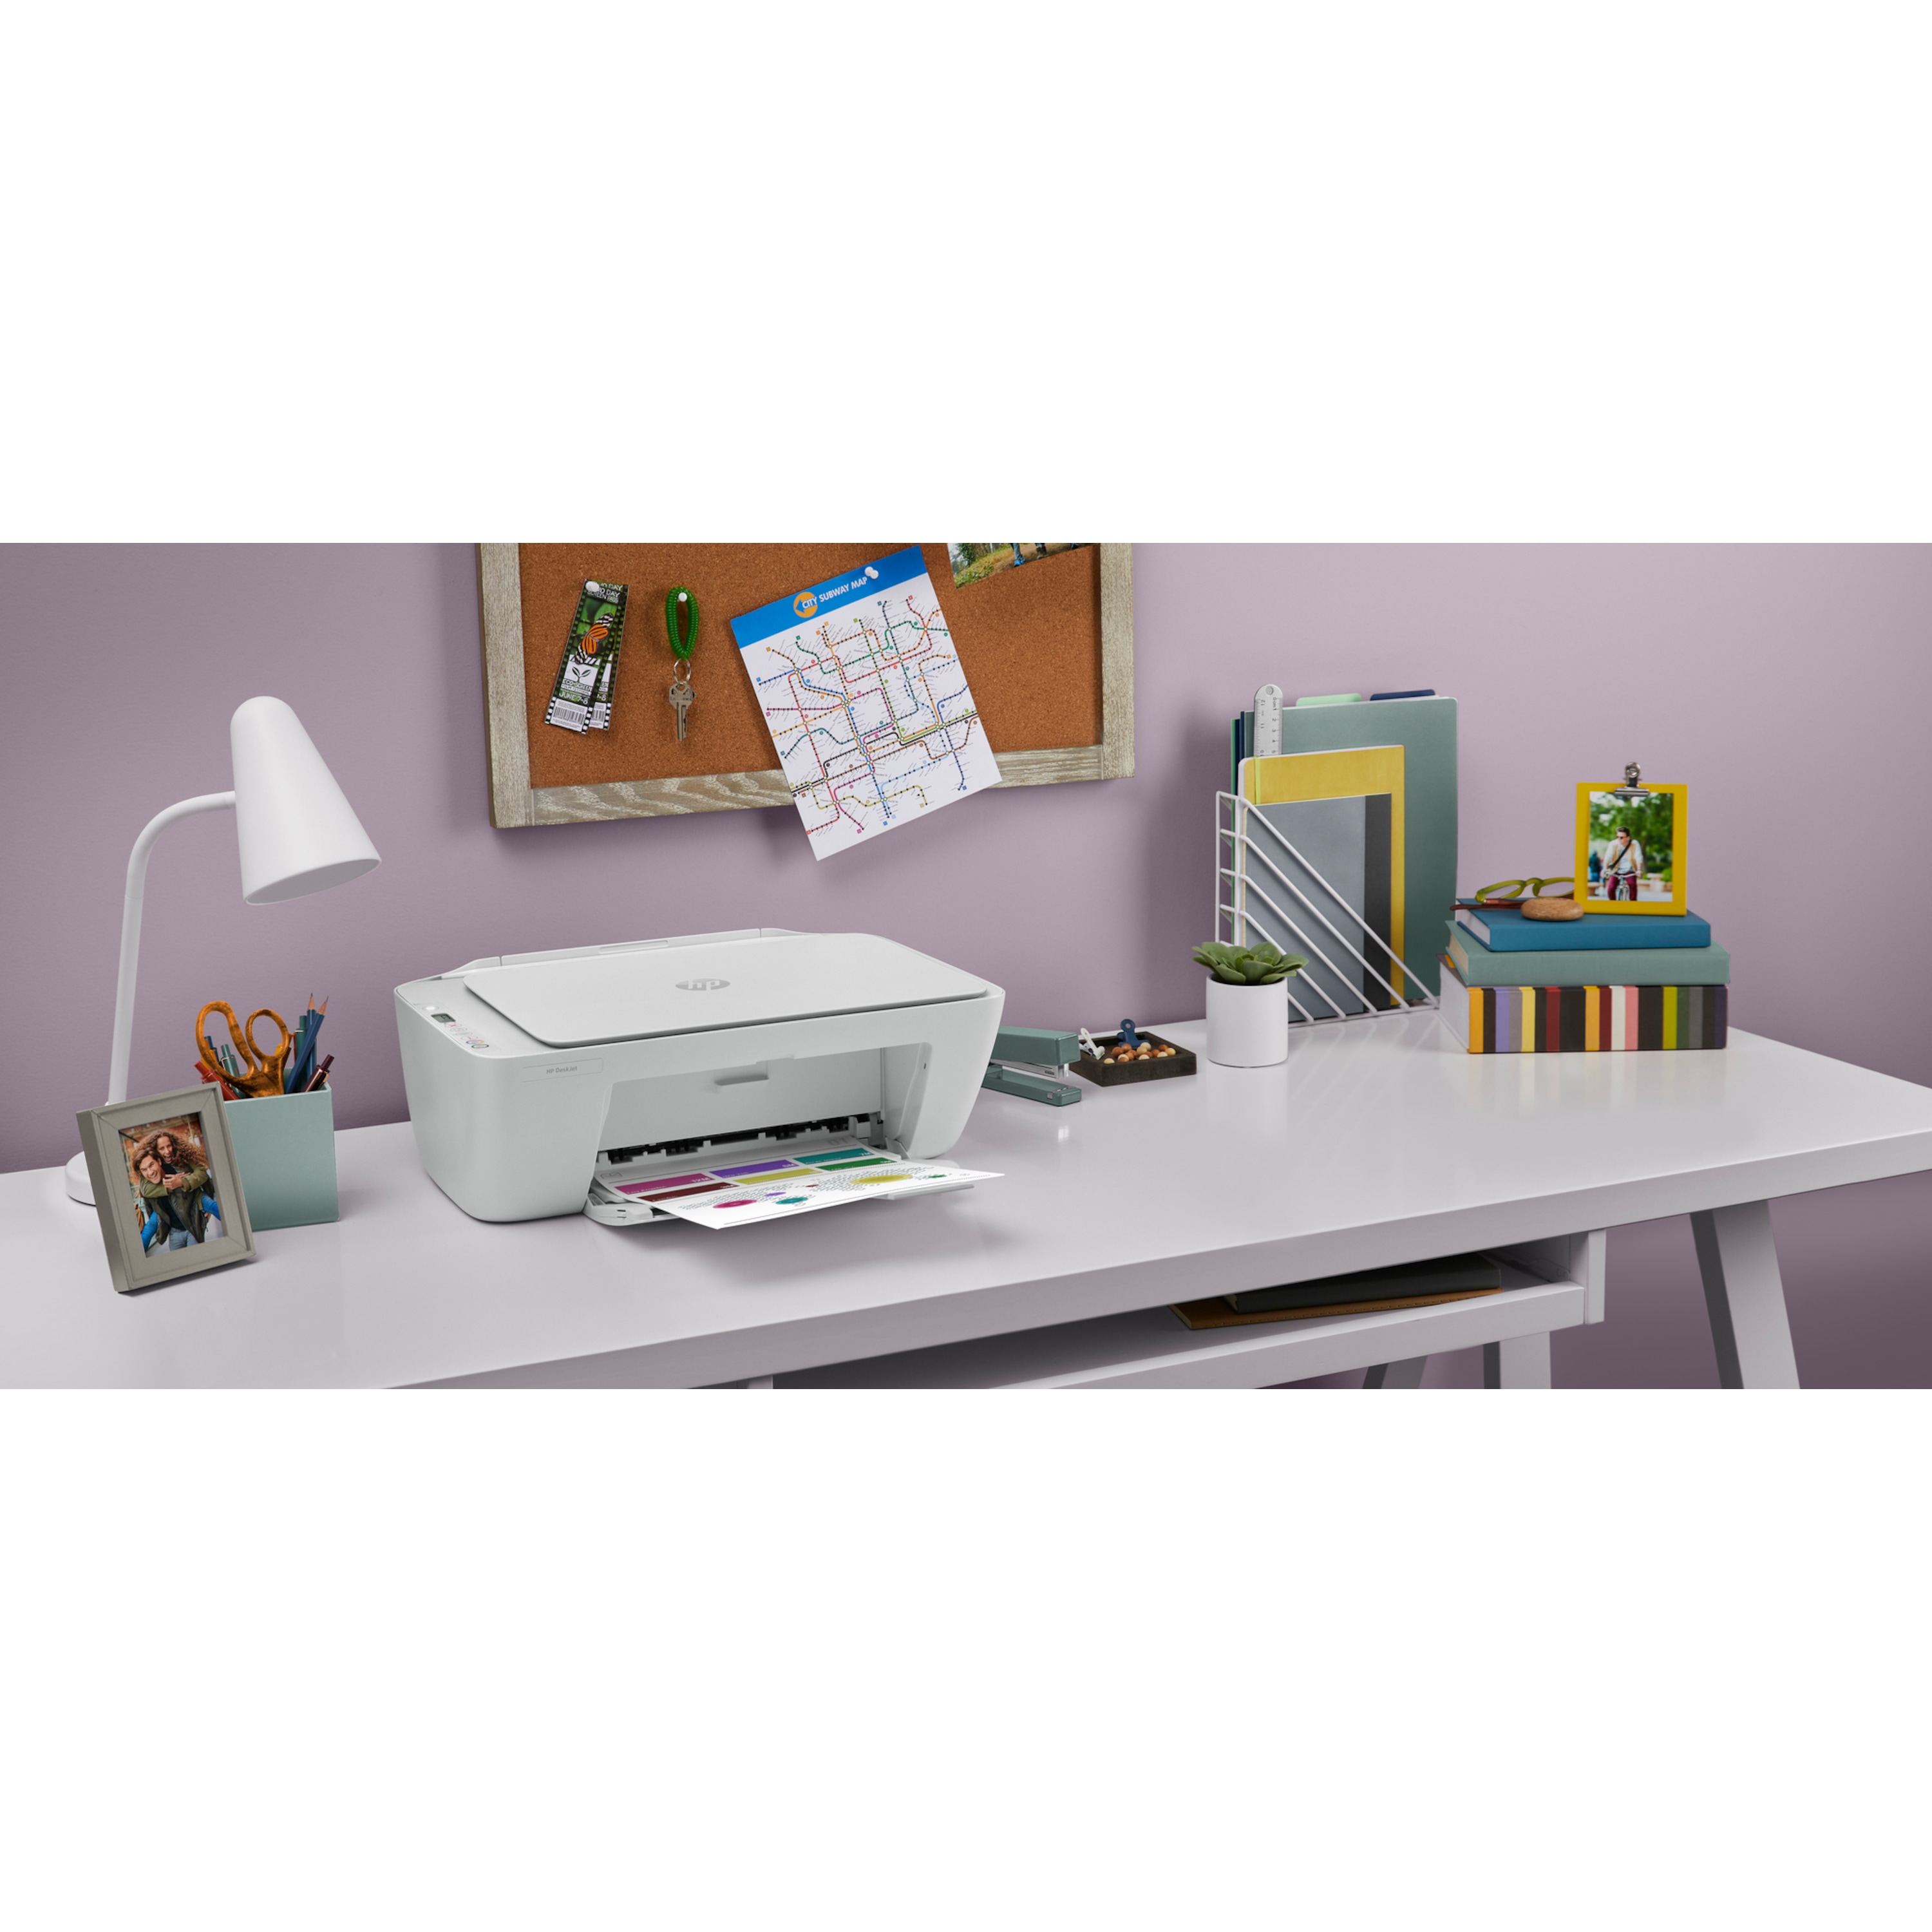 HP DeskJet 2710 All-in-One Drucker - Drucken, Kopieren, Scannen, HP Smart App, Dual-Band W-Fi®